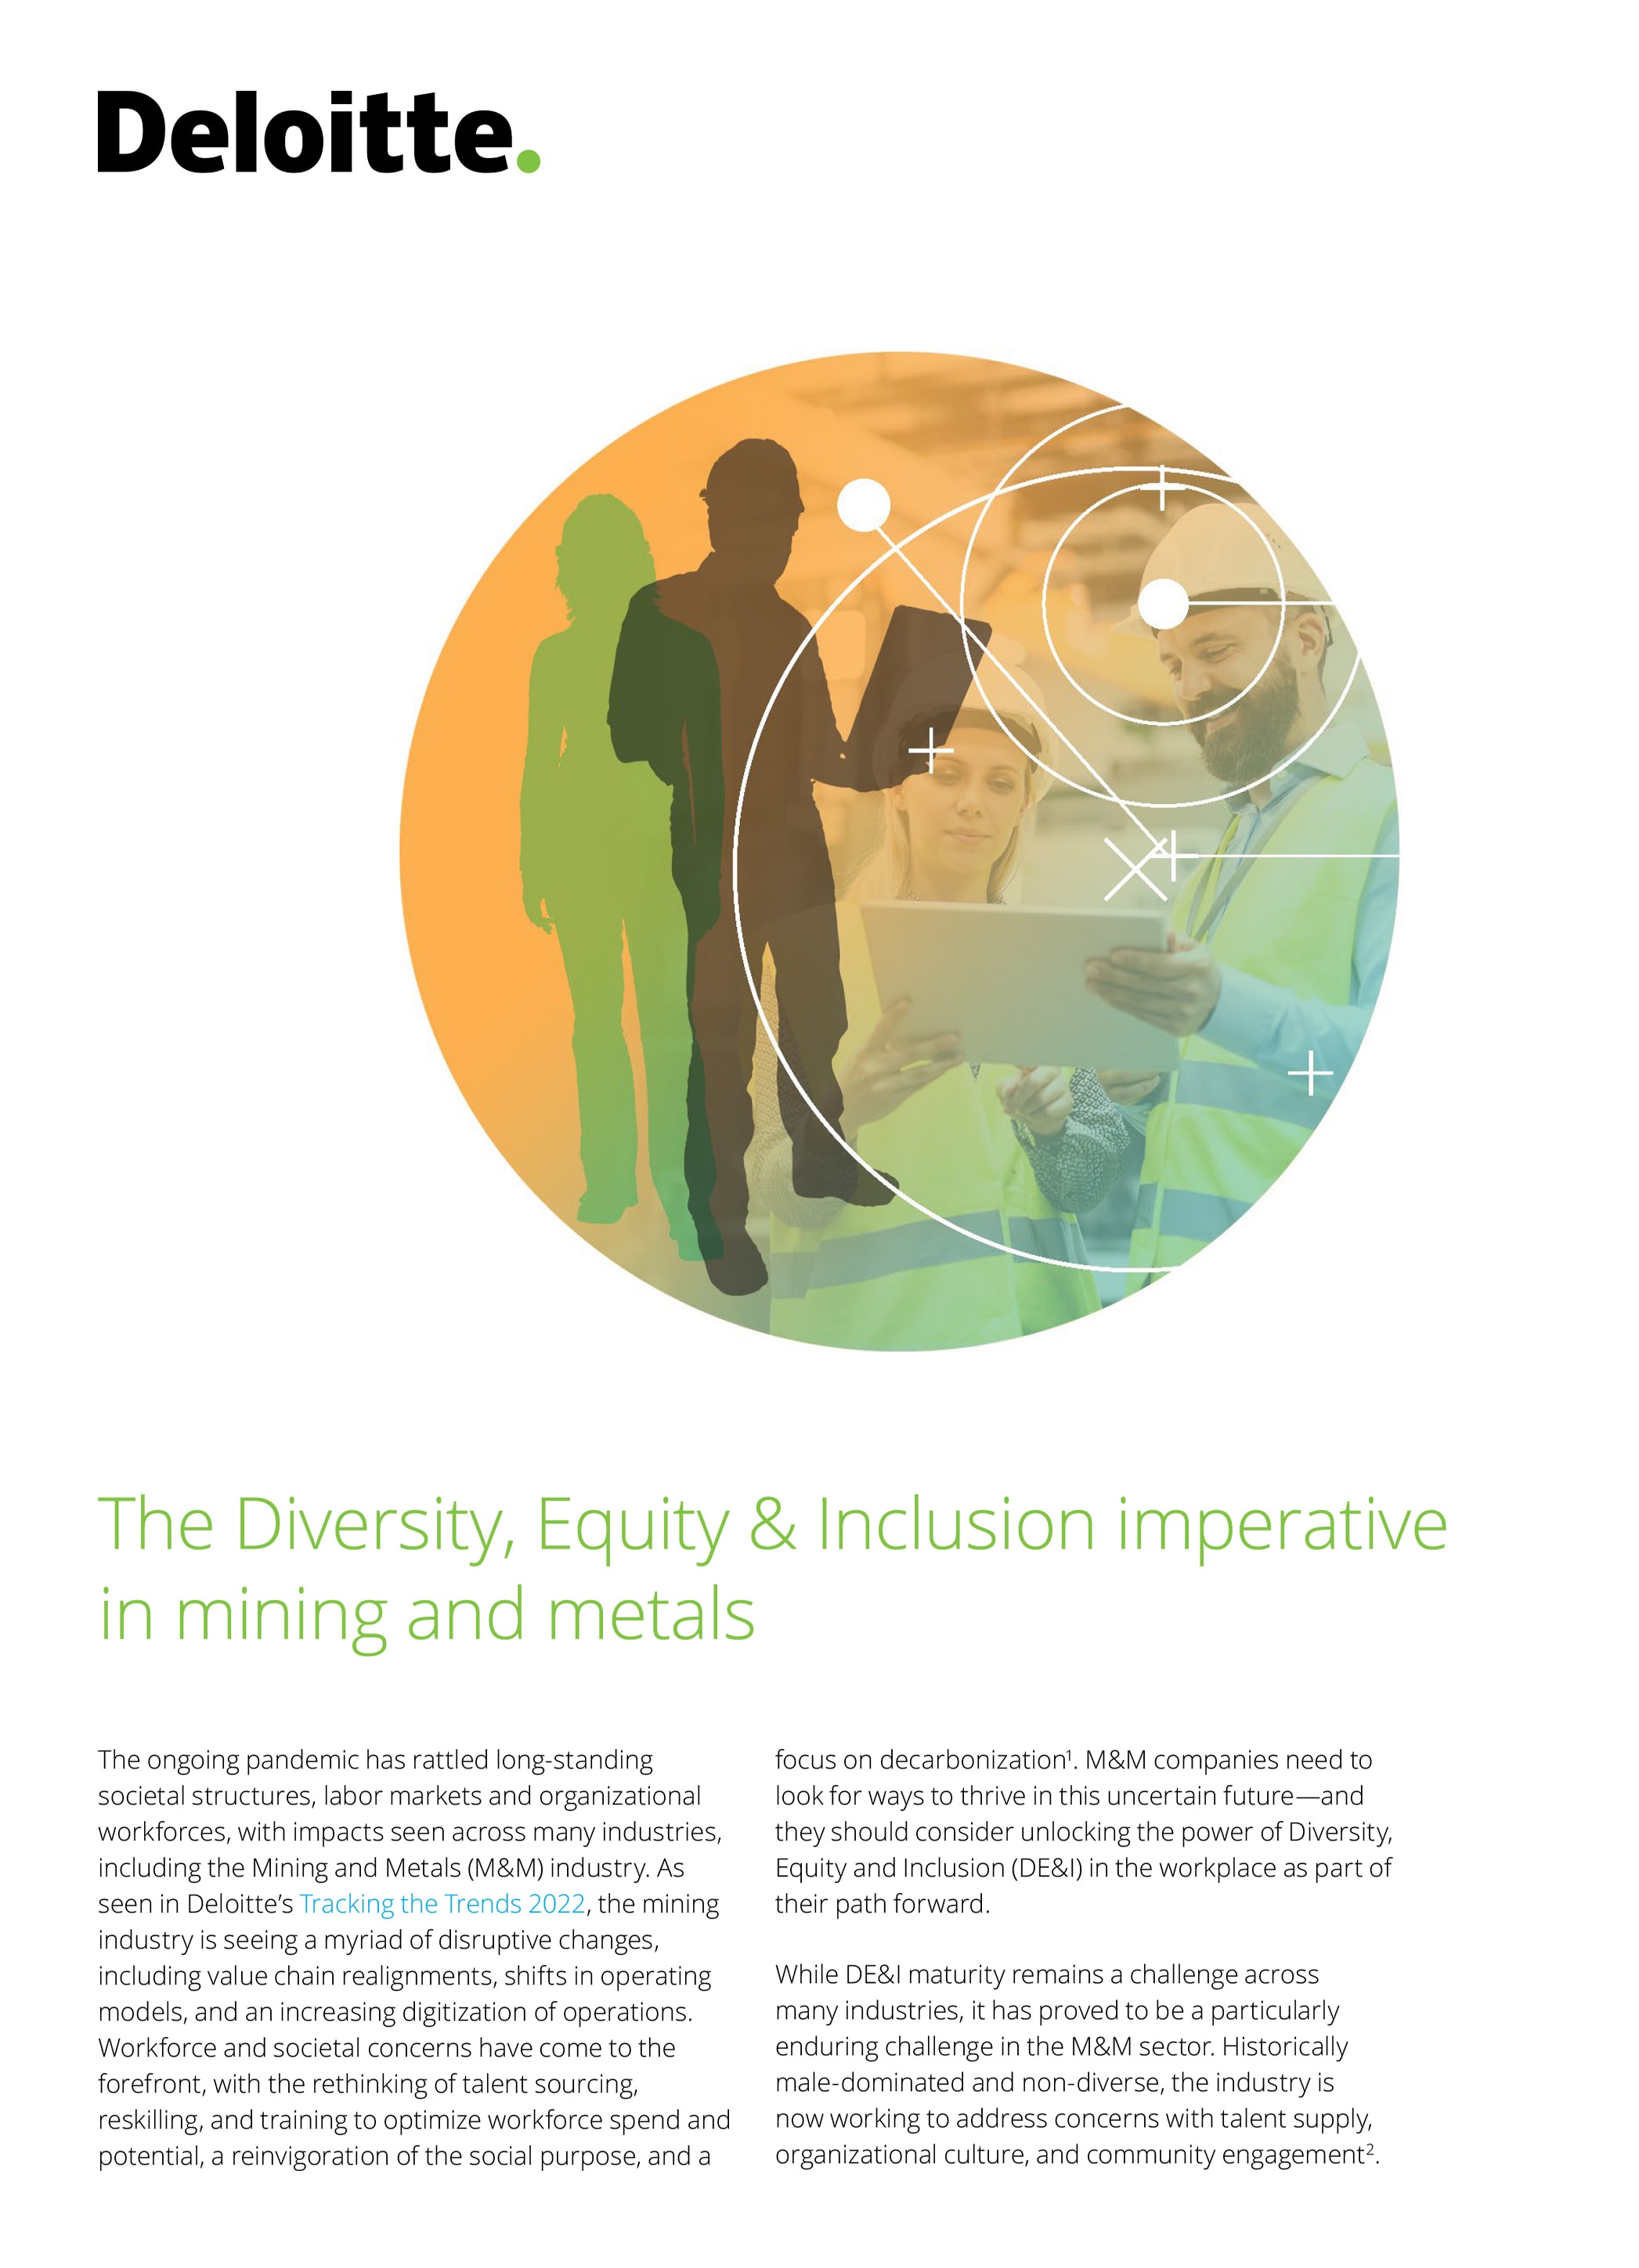 Diversidad, Equidad e Inclusión en la industria minera y metalúrgica